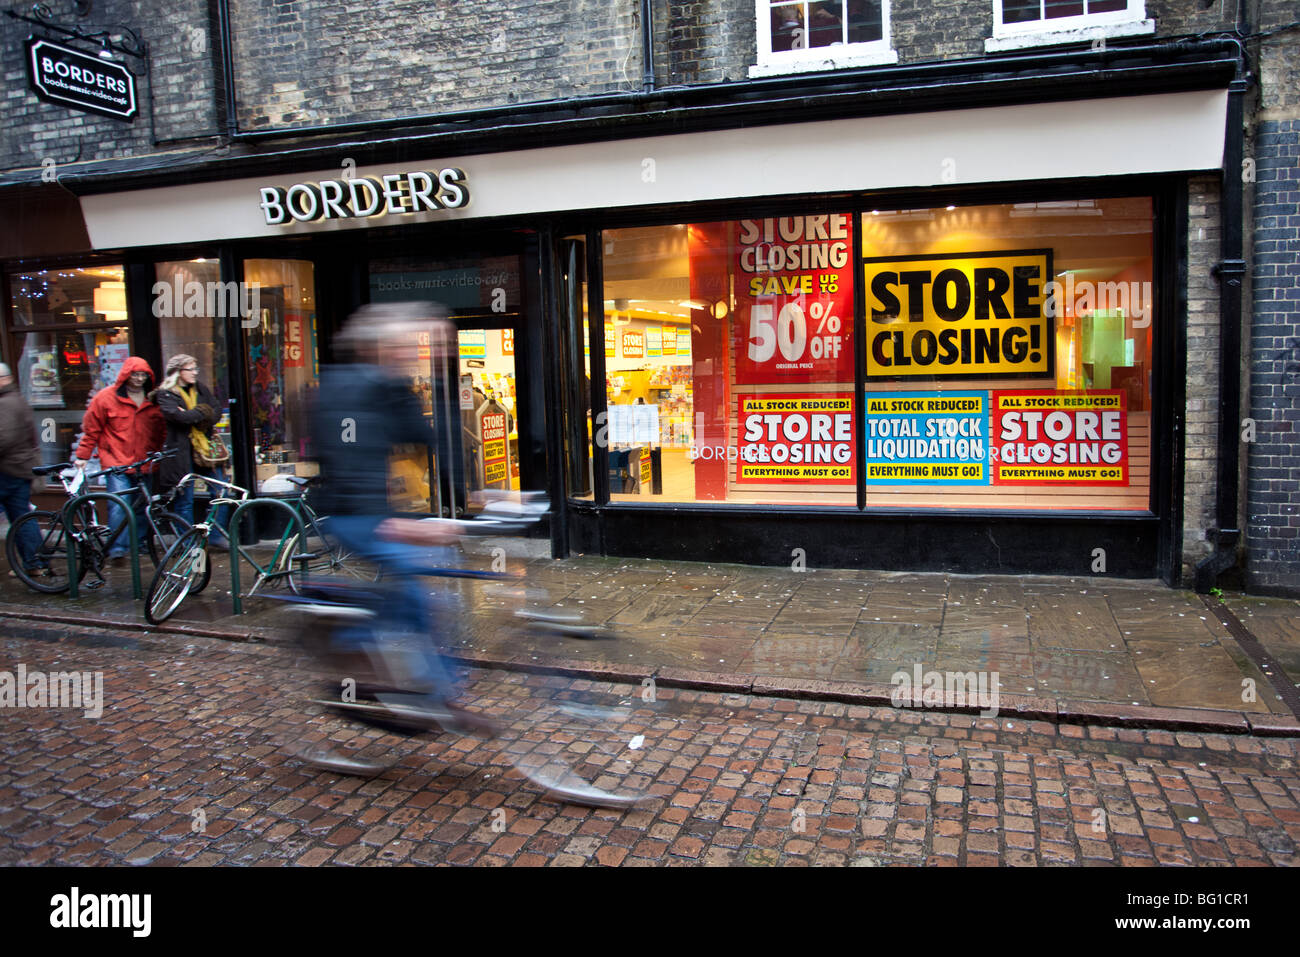 Borders Cambridge store - closing down sale Stock Photo